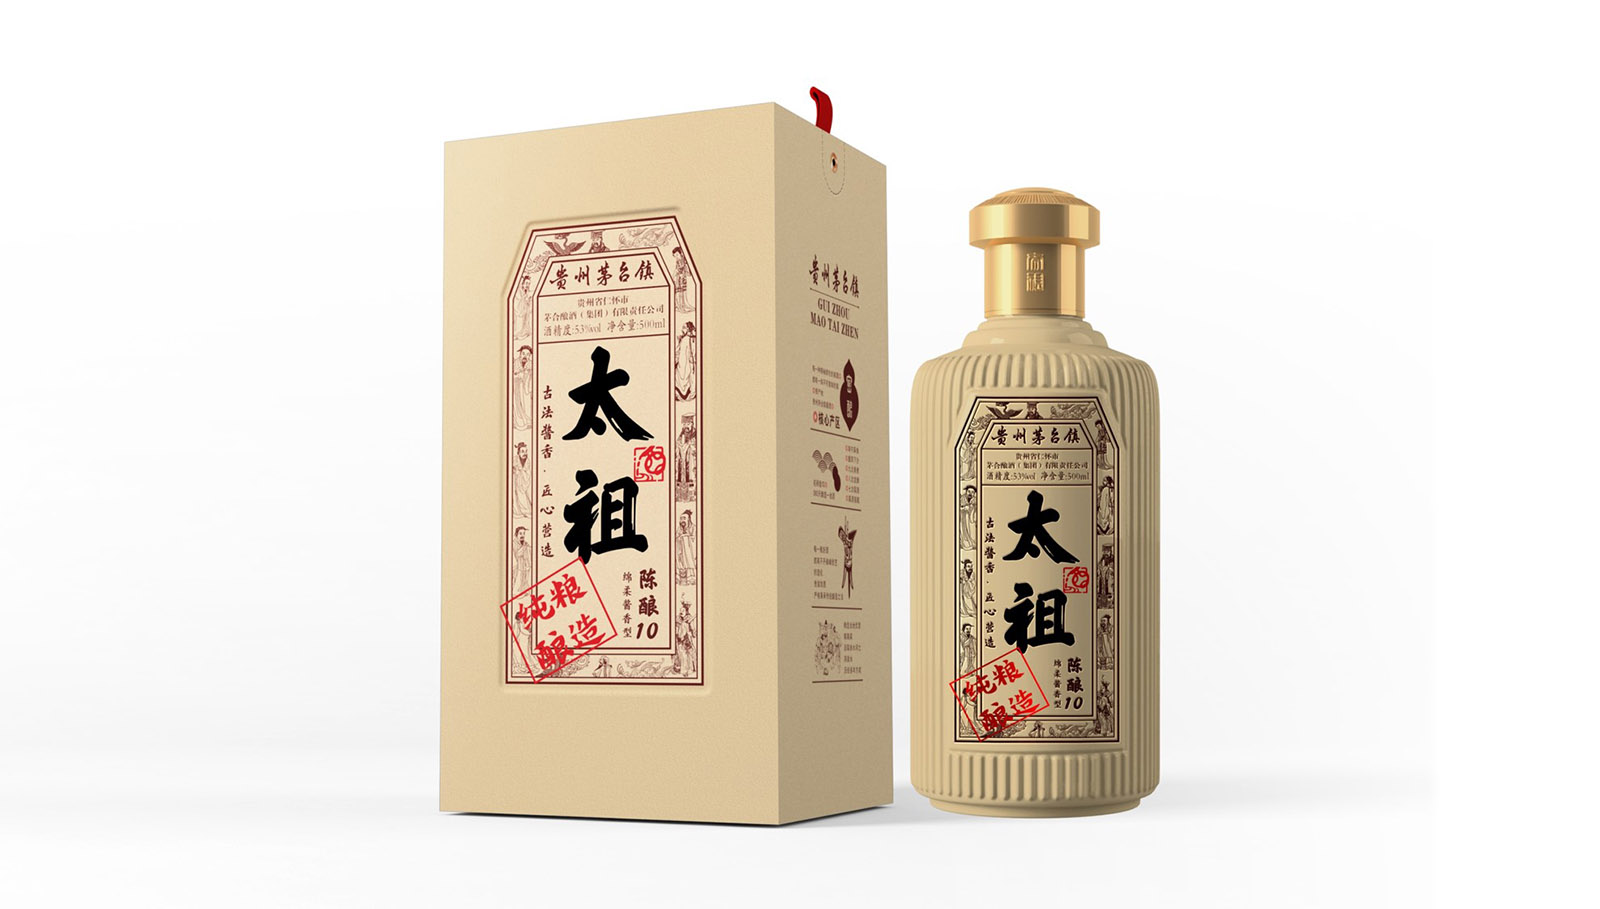 白酒包装盒设计 — 太祖